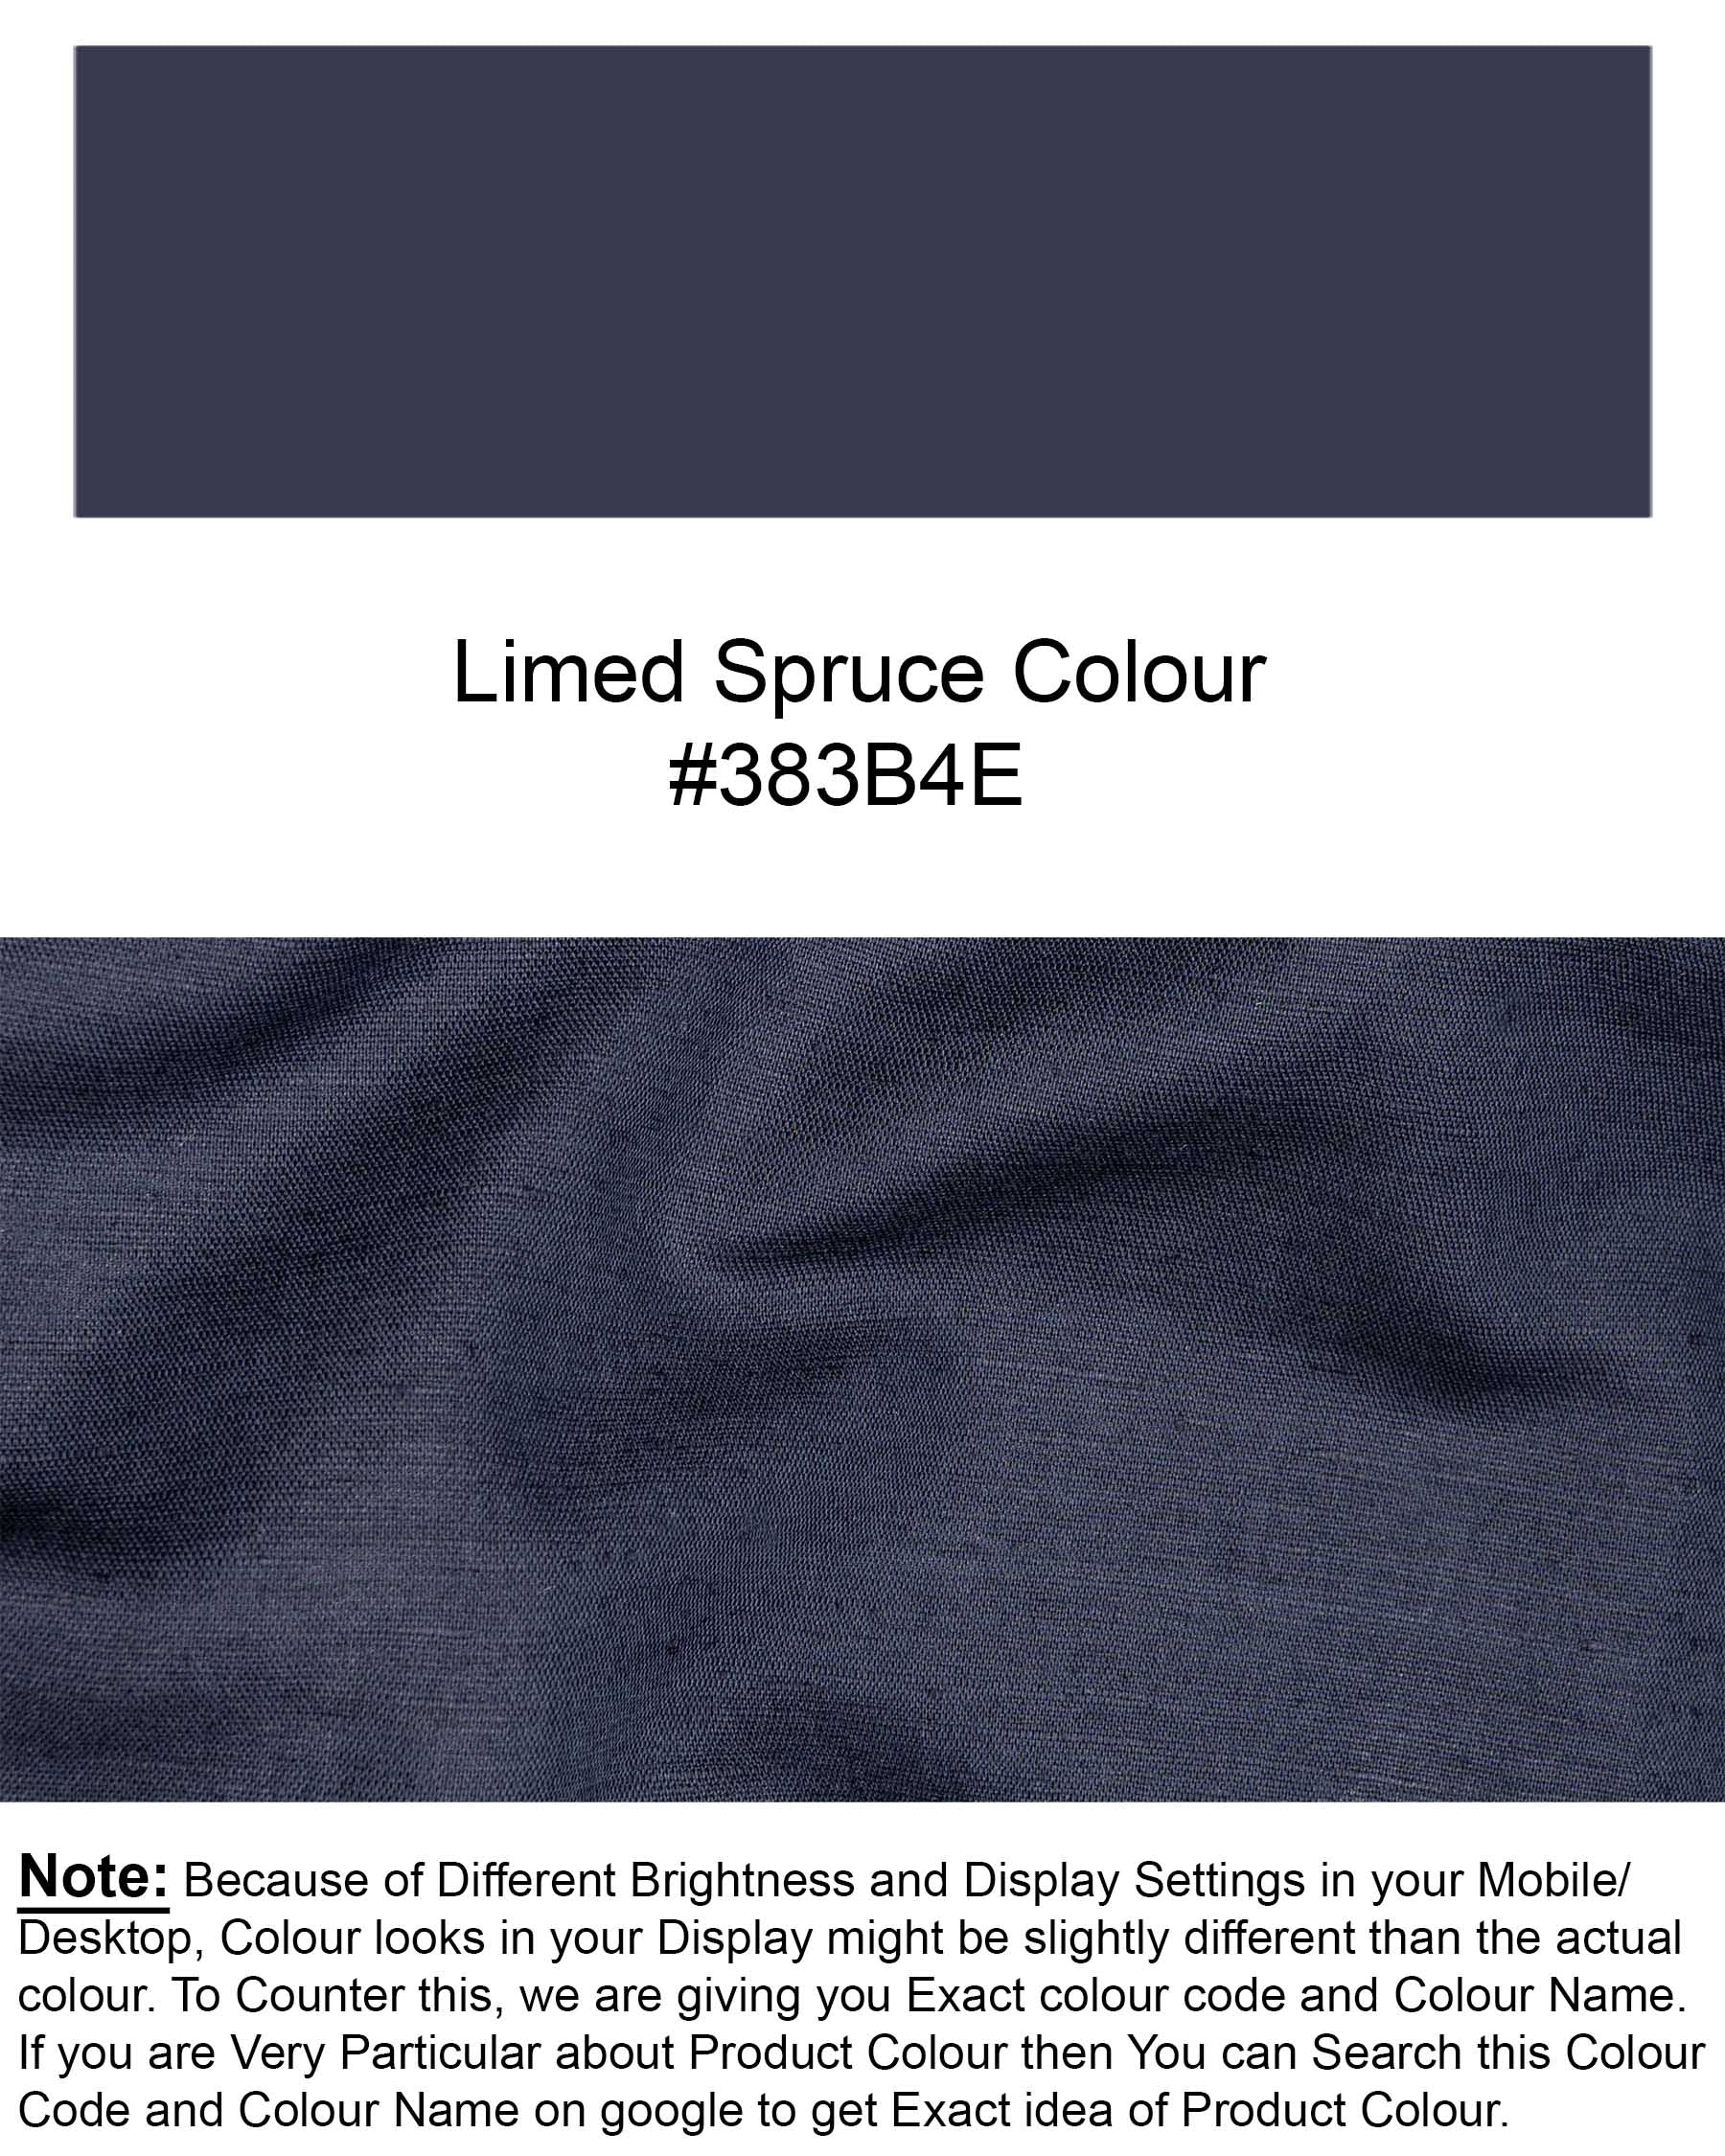 Limed Spruce Blue Luxurious Linen Kurta Shirt 7041-KS-38, 7041-KS-H-38, 7041-KS-39, 7041-KS-H-39, 7041-KS-40, 7041-KS-H-40, 7041-KS-42, 7041-KS-H-42, 7041-KS-44, 7041-KS-H-44, 7041-KS-46, 7041-KS-H-46, 7041-KS-48, 7041-KS-H-48, 7041-KS-50, 7041-KS-H-50, 7041-KS-52, 7041-KS-H-52